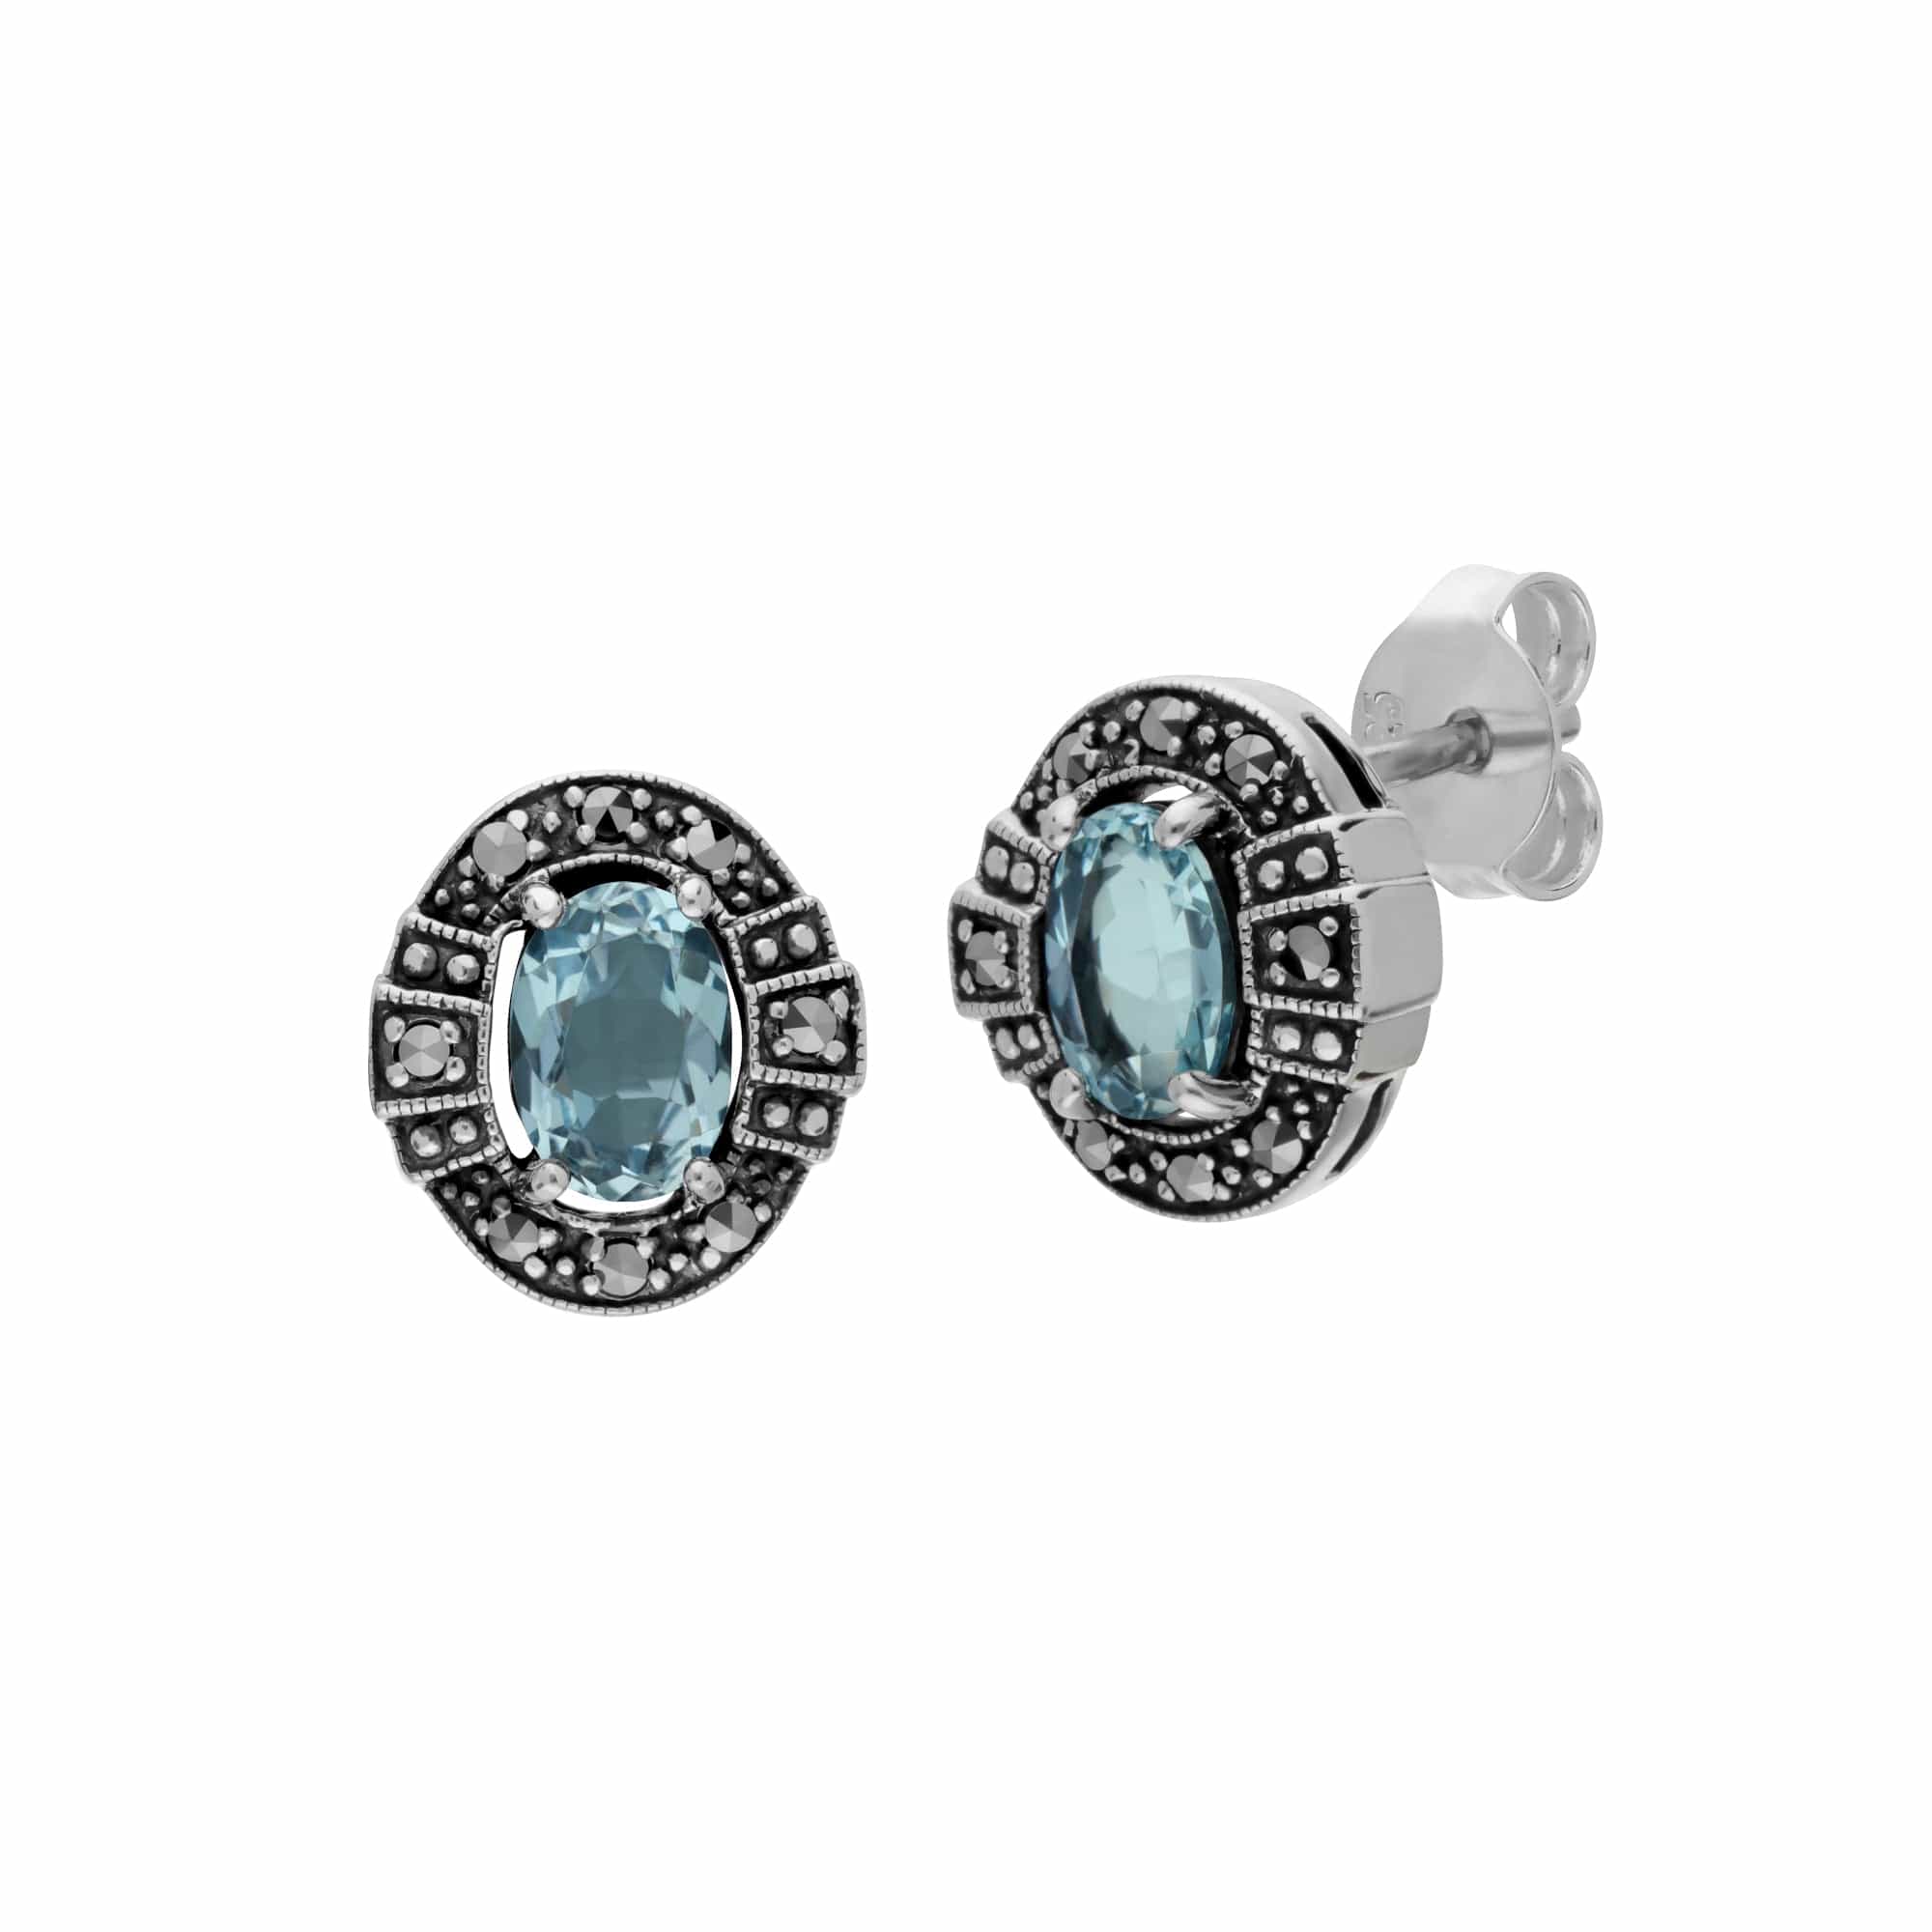 214E873001925 Art Deco Style Oval Blue Topaz & Marcasite Stud Earrings in 925 Sterling Silver 1